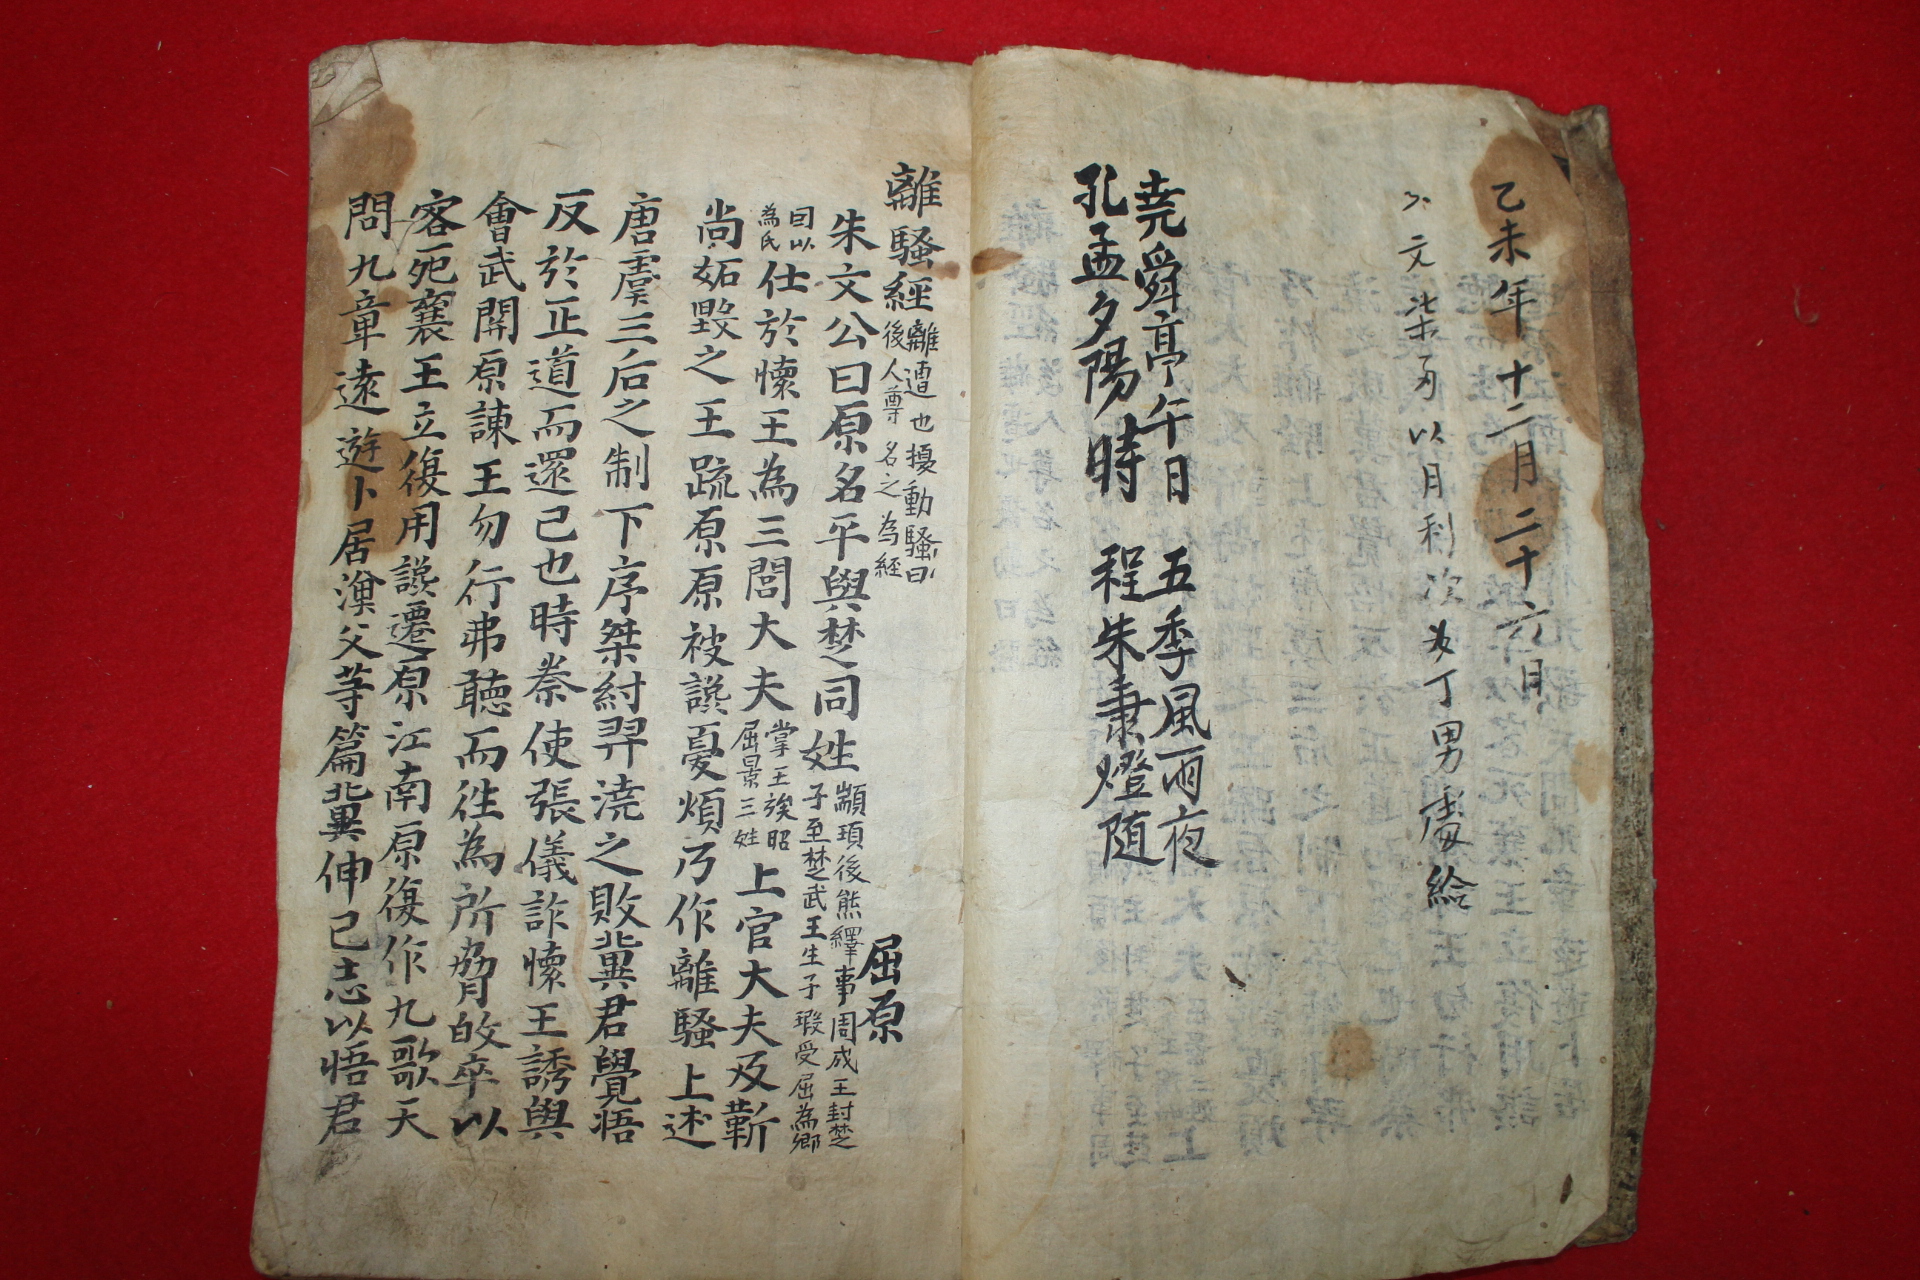 조선시대 필사본 잡노경,애강남등 고부(古賦)